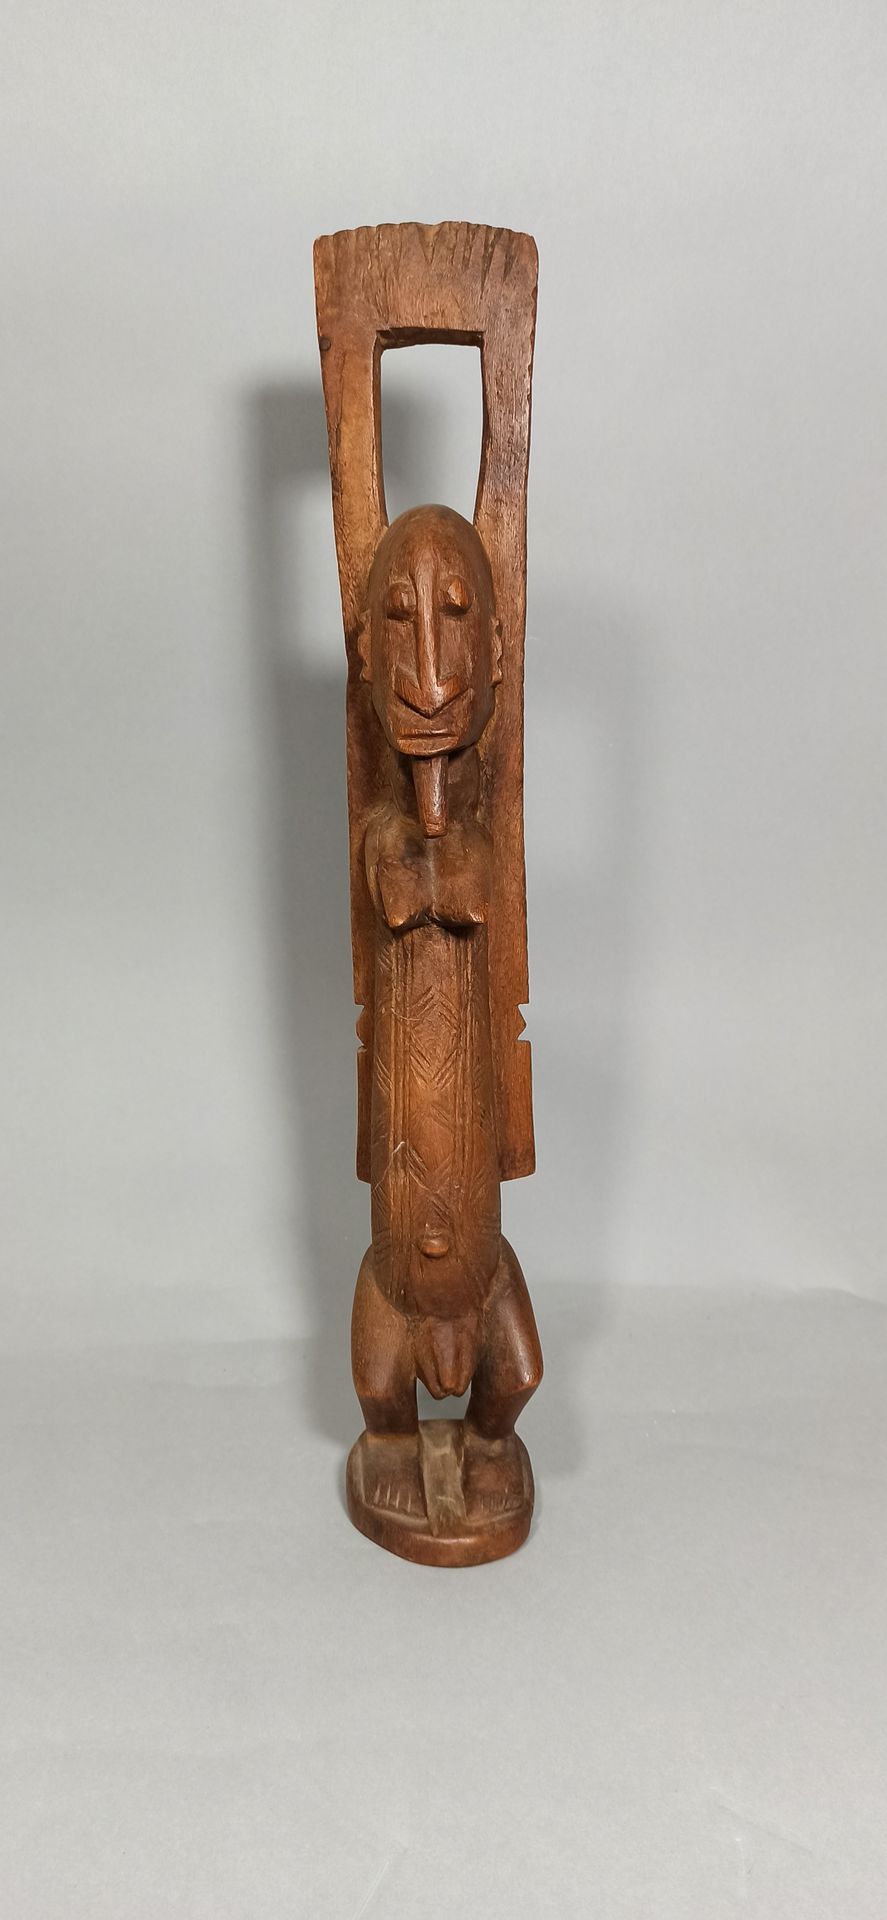 Null Statua Dogon con le braccia alzate, circa 1960.

Altezza: 66 cm